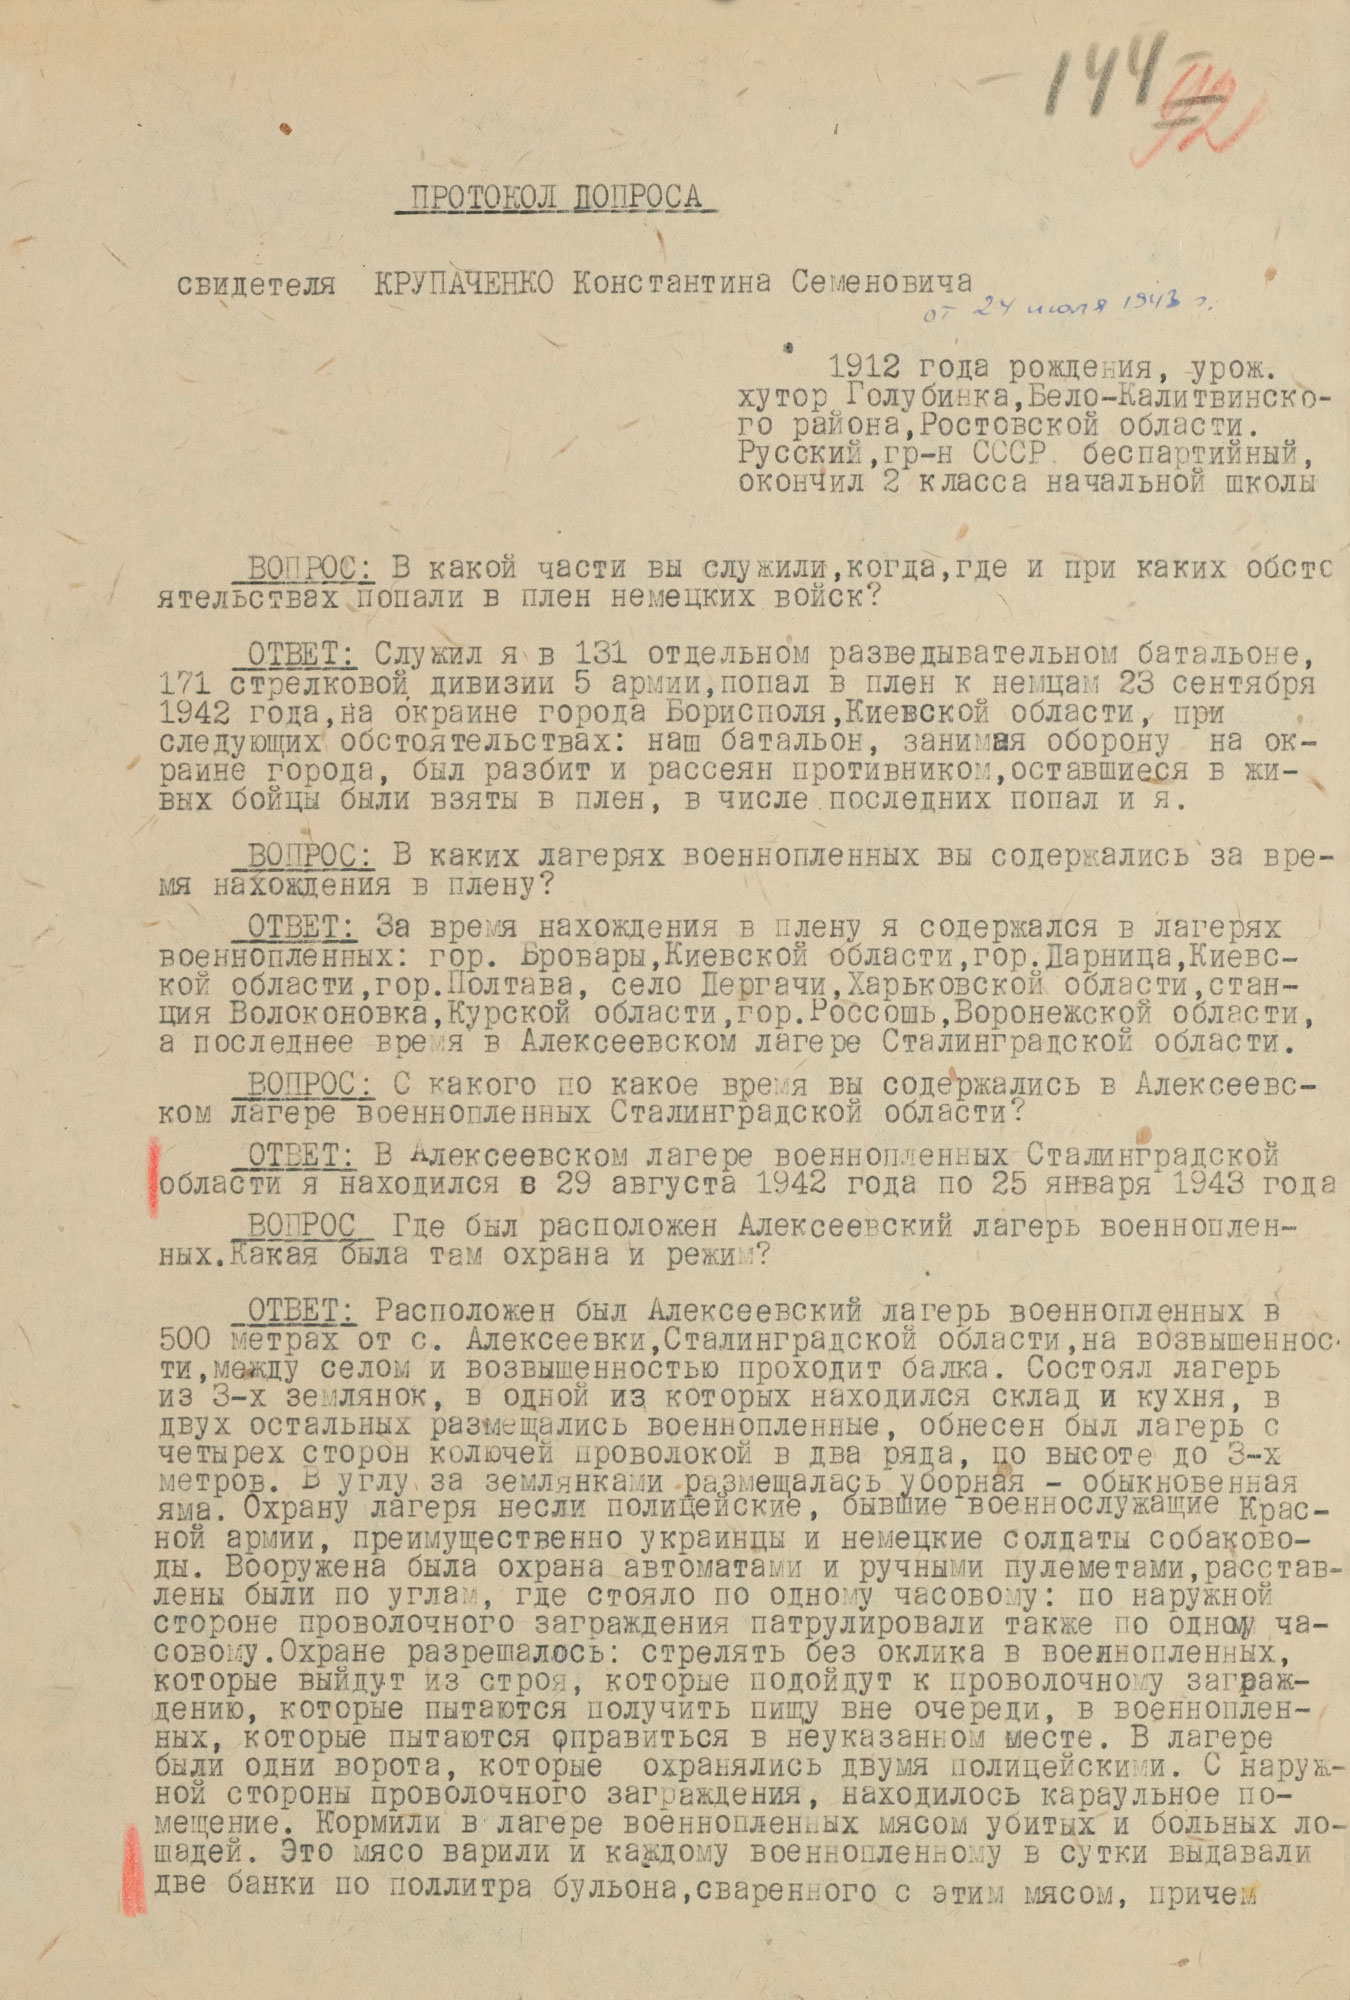  Протокол допроса свидетеля Крупченко Константина Семеновича, содержавшегося в лагере «Дулаг-205». 24 июля 1943 года. Страница 1